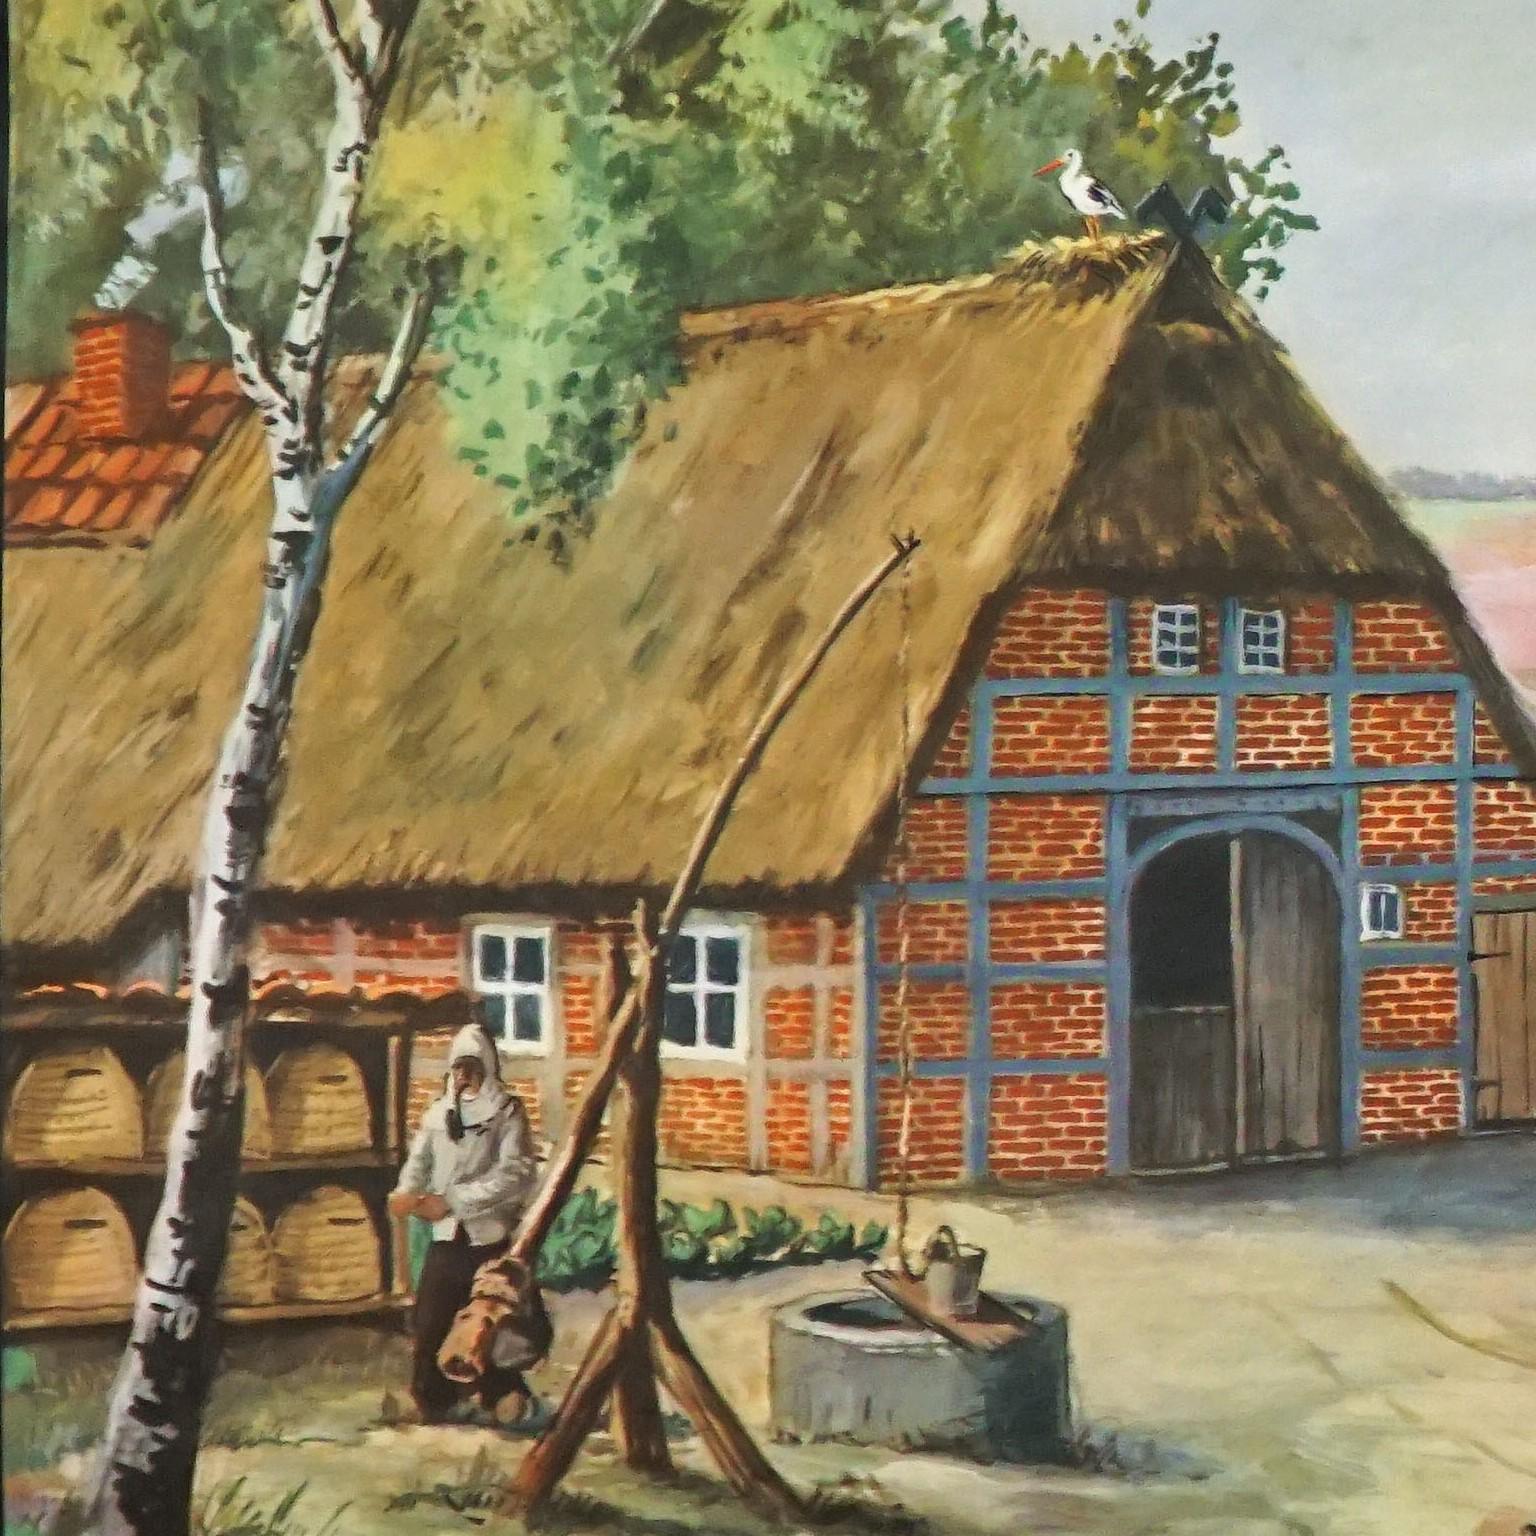 Die cottagecore Vintage-Wandtafel zeigt die wunderbare Landschaft der Lüneburger Heide (eine einzigartige Region in Norddeutschland) mit einem typischen Bauernhaus, Bienenstöcken mit Imker, einem Schäfer mit seiner Schafherde und einem reichen